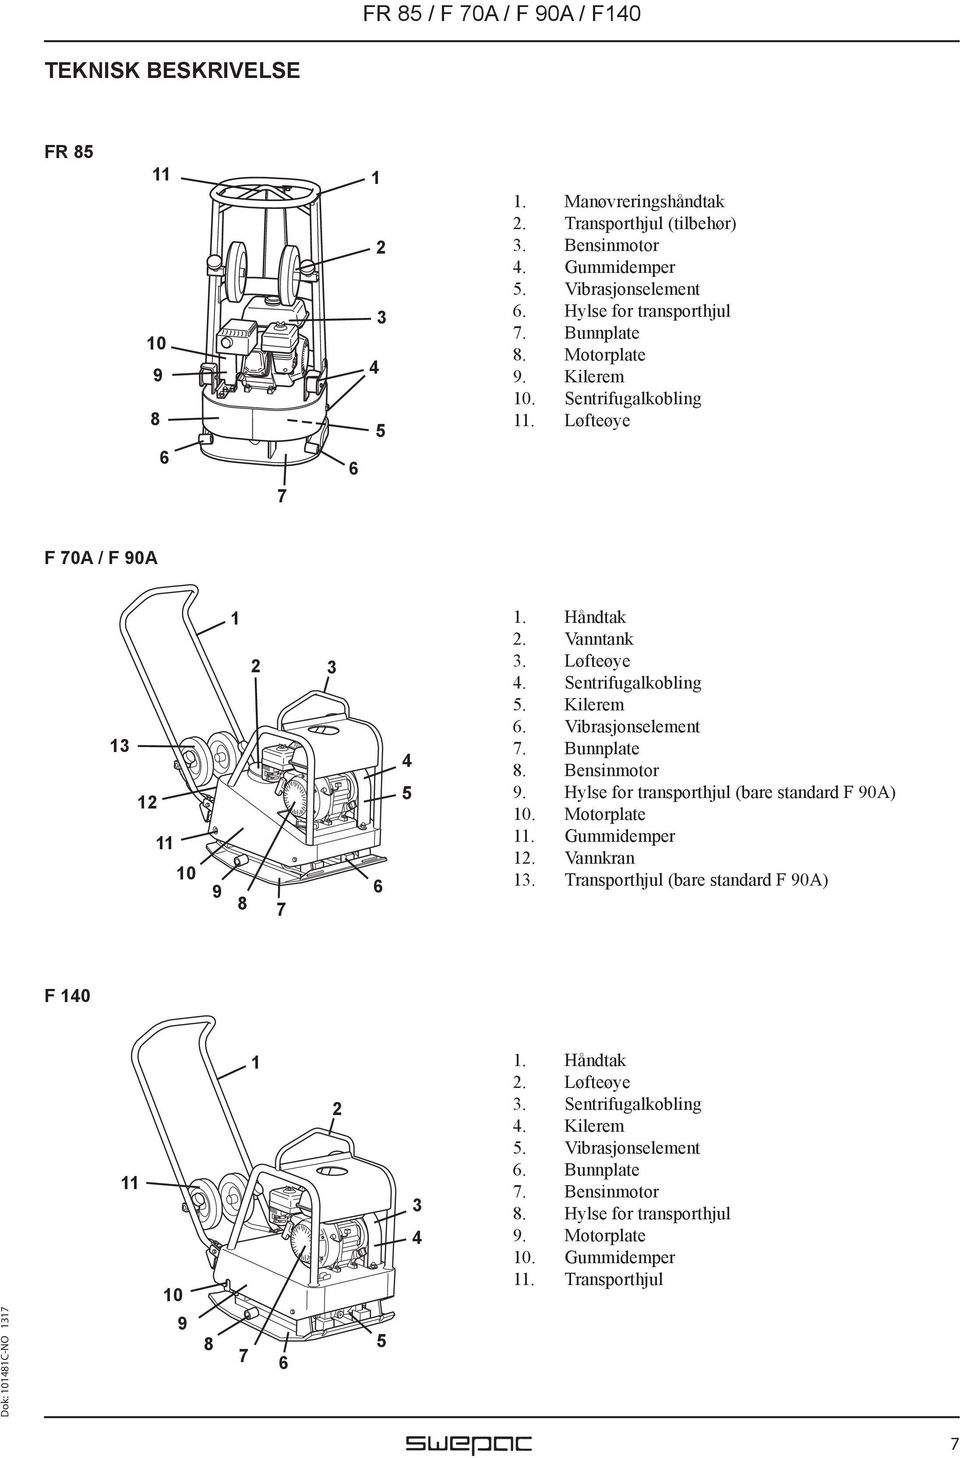 Vibrasjonselement 7. Bunnplate 8. Bensinmotor 9. Hylse for transporthjul (bare standard F 90A) 10. Motorplate 11. Gummidemper 12. Vannkran 13.